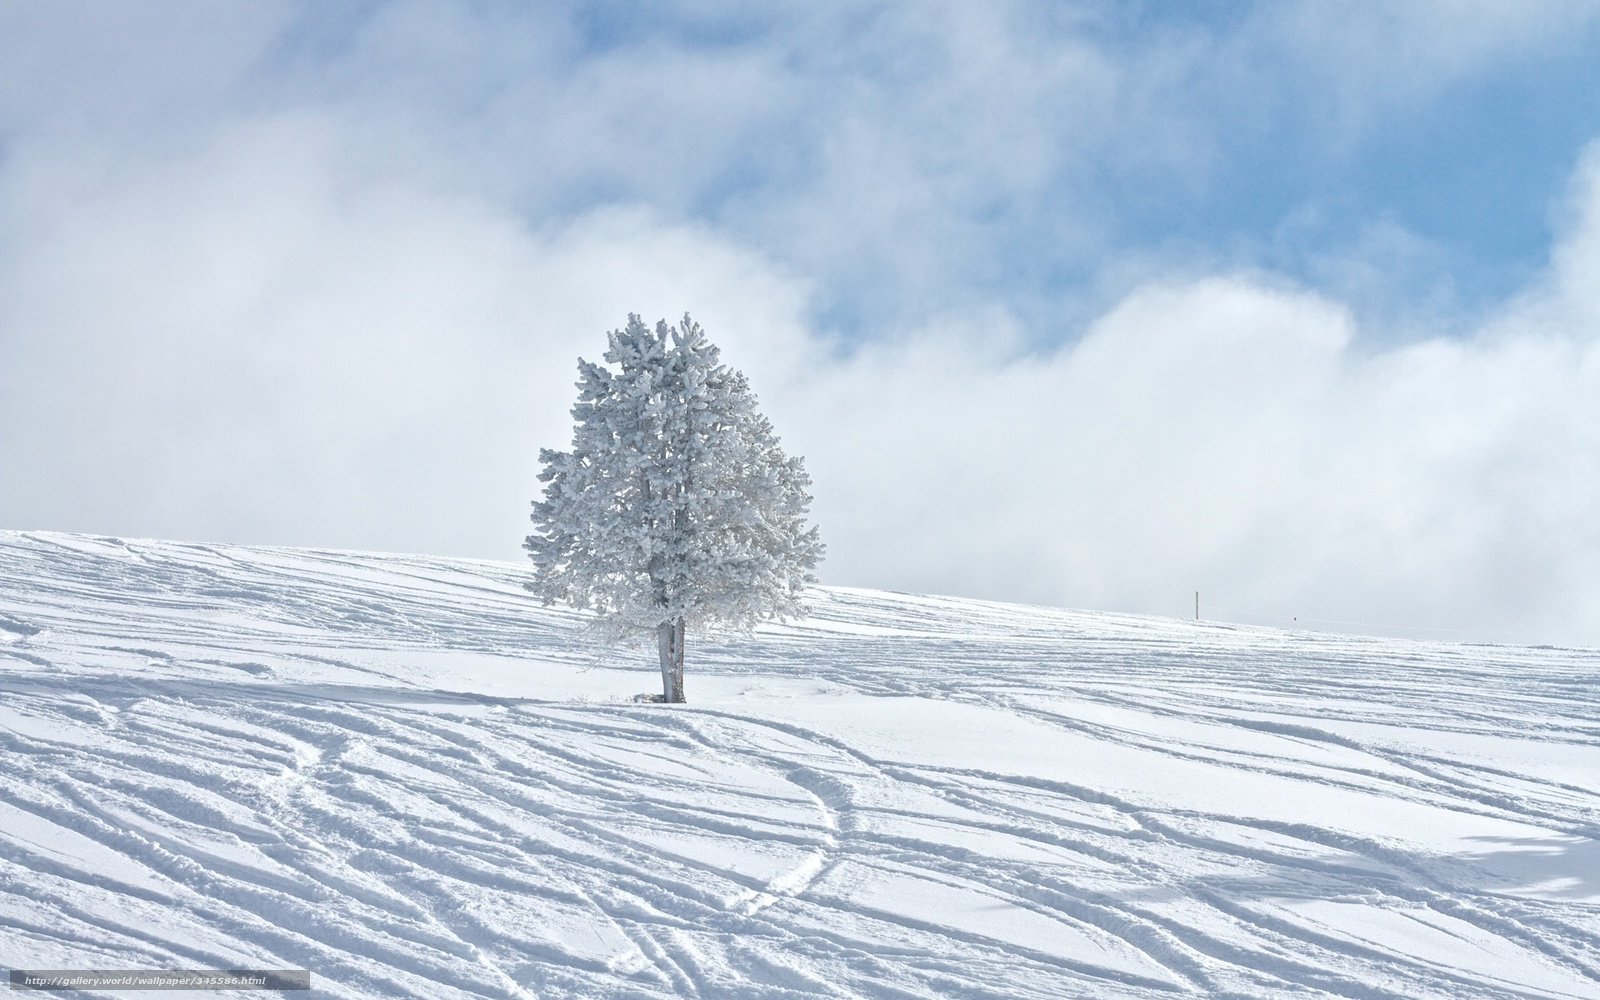 Descargar Gratis Invierno, Winter Wallpaper, Nieve, - Snow Hd Wallpaper Iphone , HD Wallpaper & Backgrounds